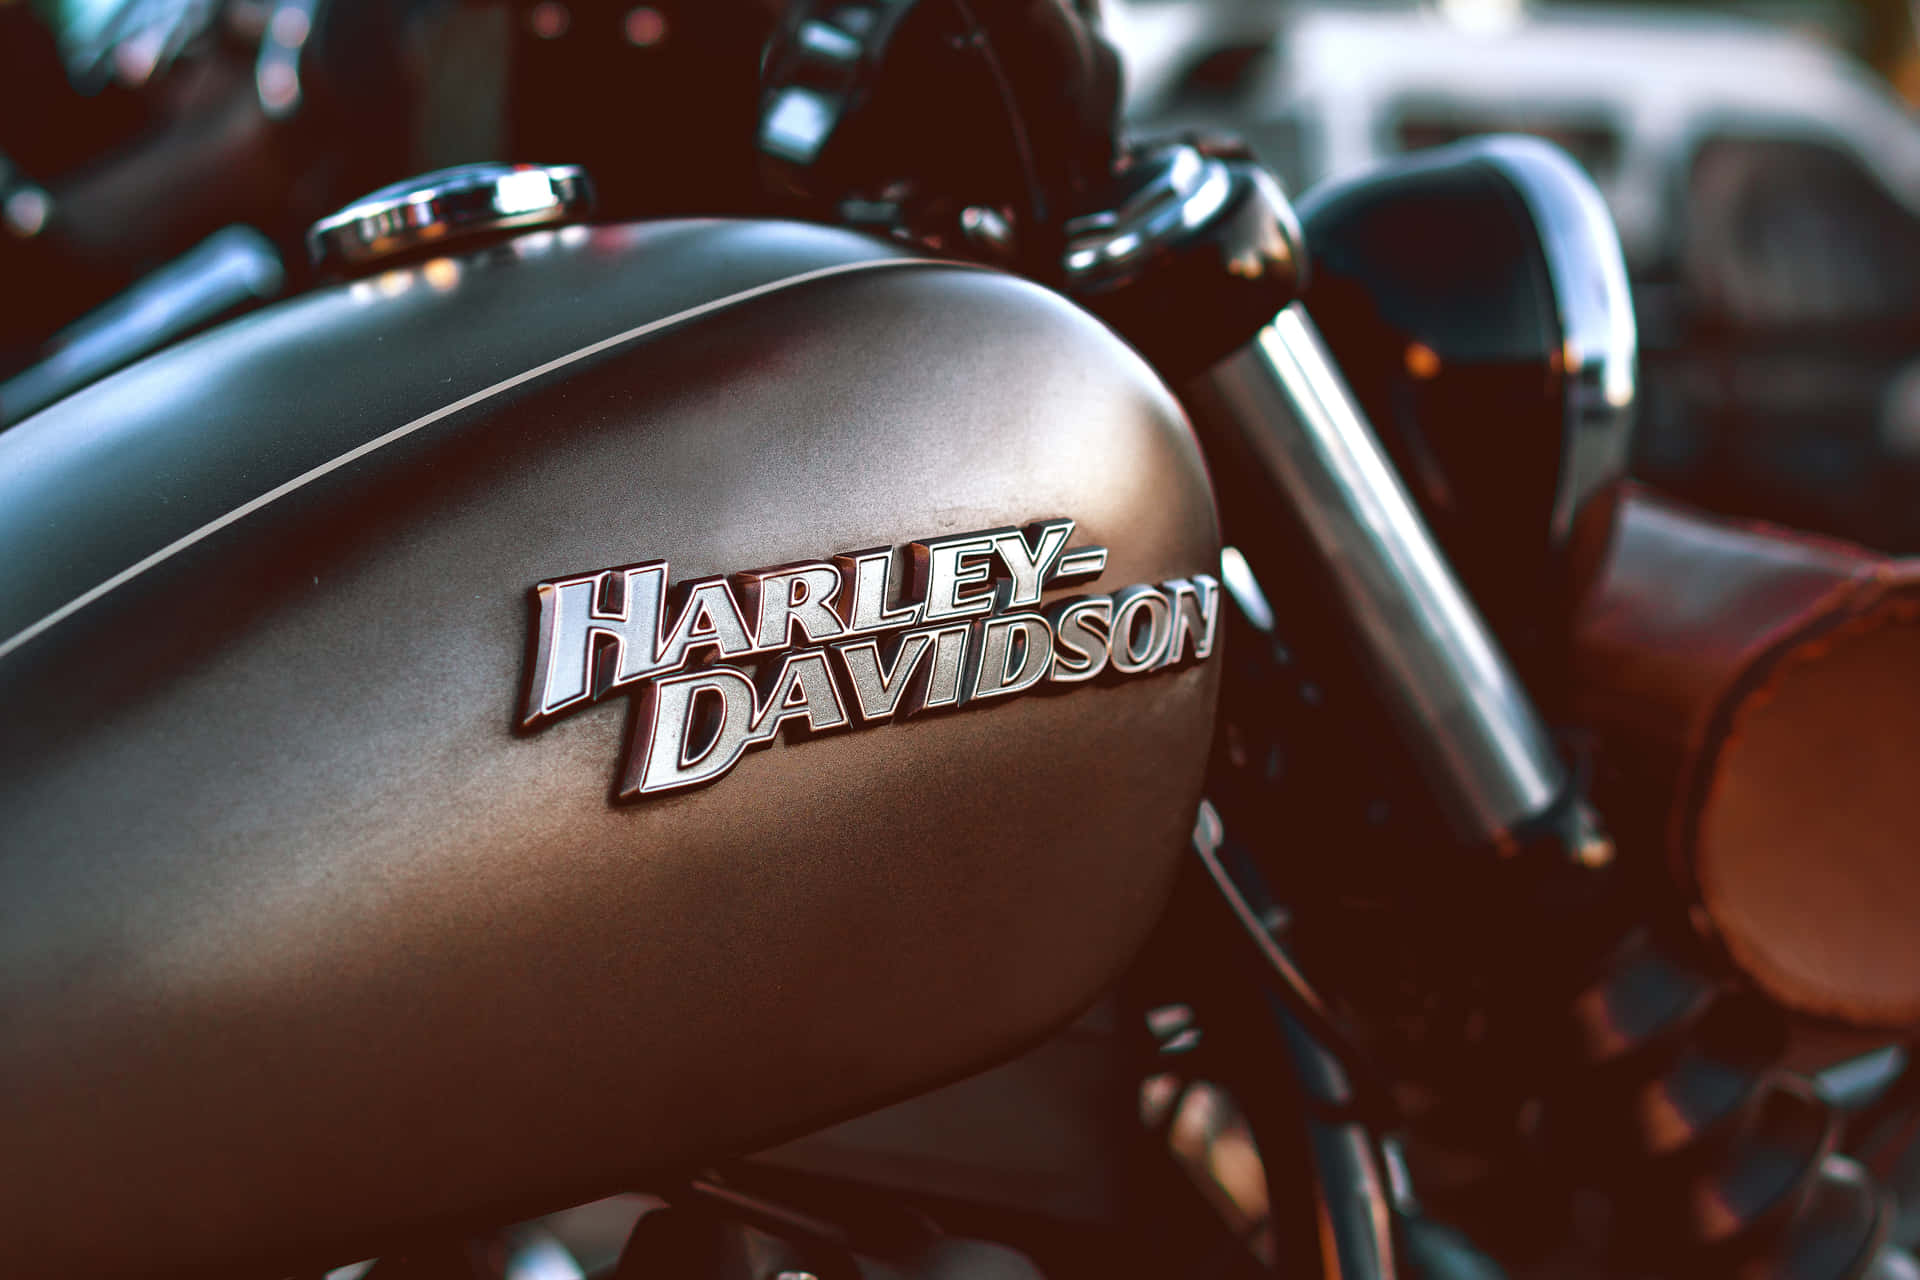 Harleydavidson-logo På En Motorcykel-baggrund.